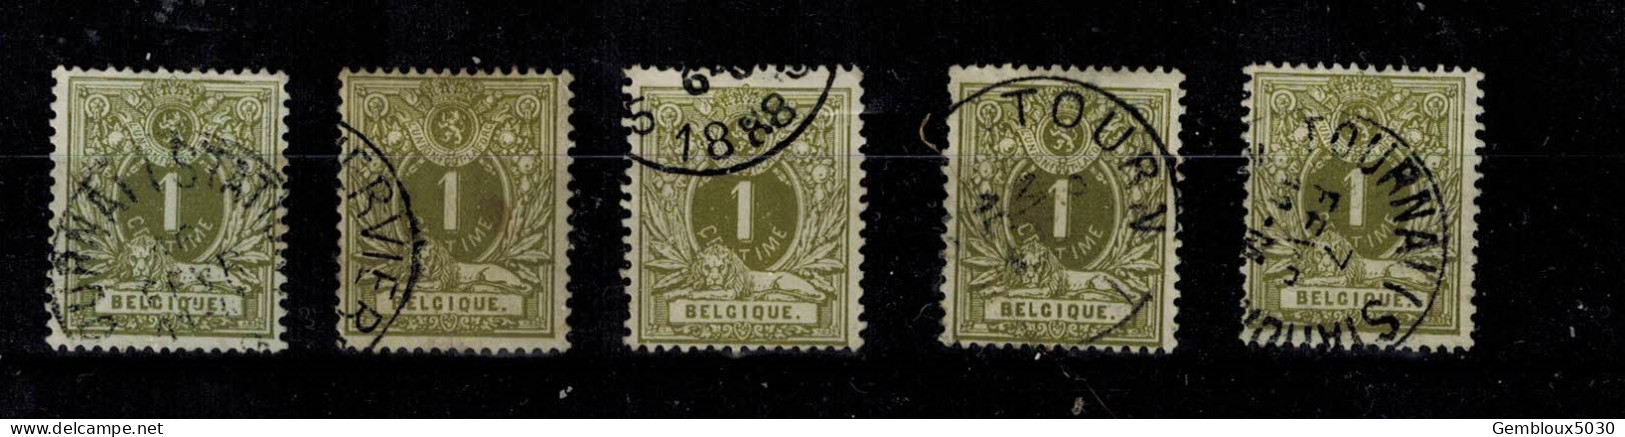 Belgique N° 42 X 5 - Lots & Kiloware (mixtures) - Max. 999 Stamps